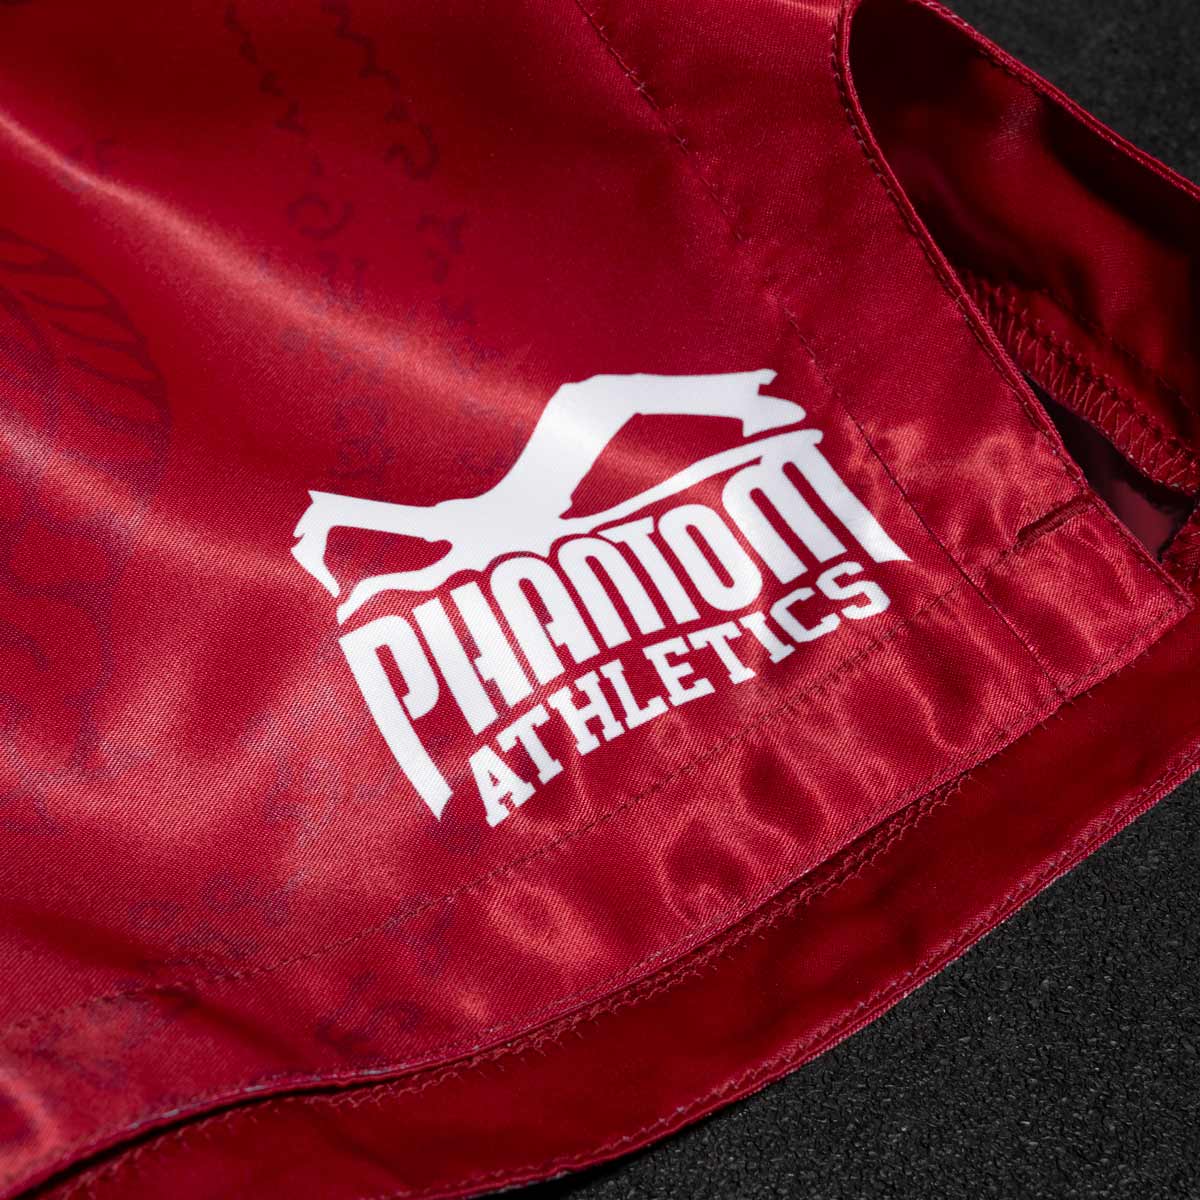 Die Phantom Muay Thai Shorts SAK YANT in rot. Oldschool Satin Stoff mit traditionellem Tiger Design verleiht dir original Thailand Feeling. In gewohnter Phantom Athletics Qualität. Ideal für dein Thaibox Training und den Wettkampf.